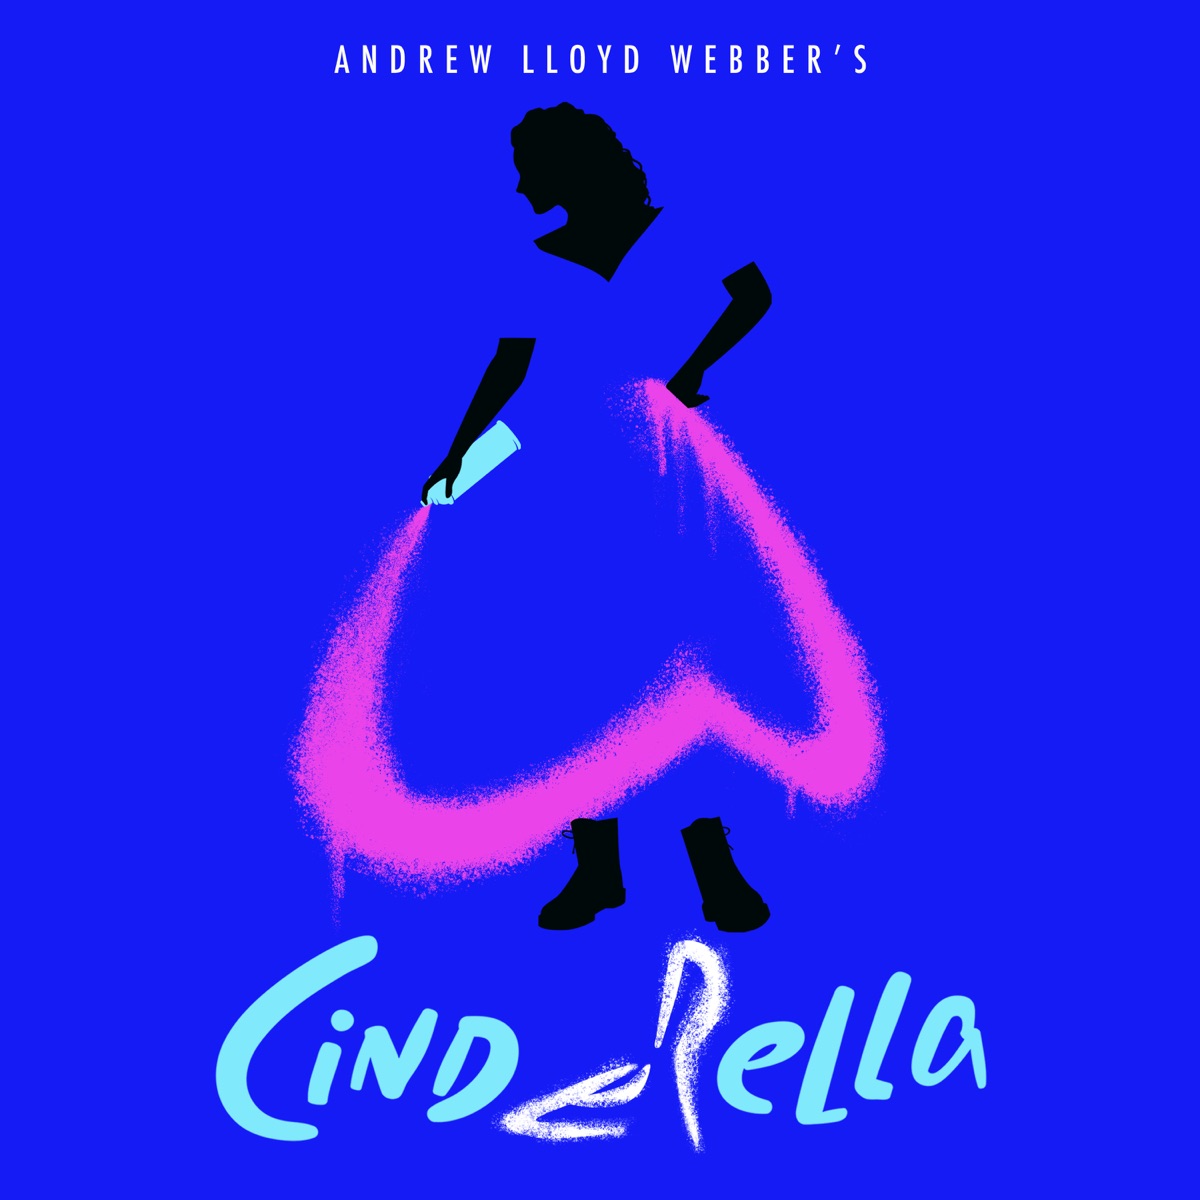 Andrew Lloyd Webber - Highlights from Andrew Lloyd Webber's Cinderella